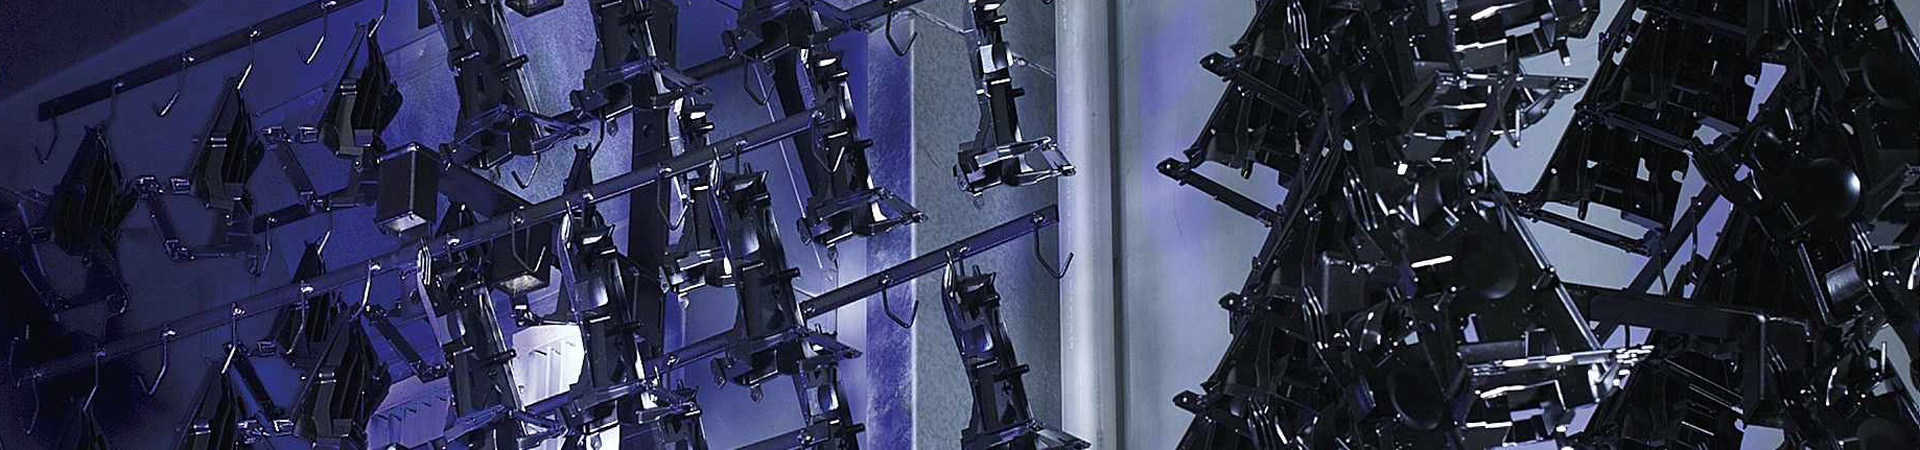 Werterhaltung für Ihre Produkte - KTL-Beschichtung & KTL-Pulverbeschichtung - Zinklamellenbeschichtung - Pulverbeschichtung in NRW - KTL Beschichtung NRW - KAISER Oberflächentechnik